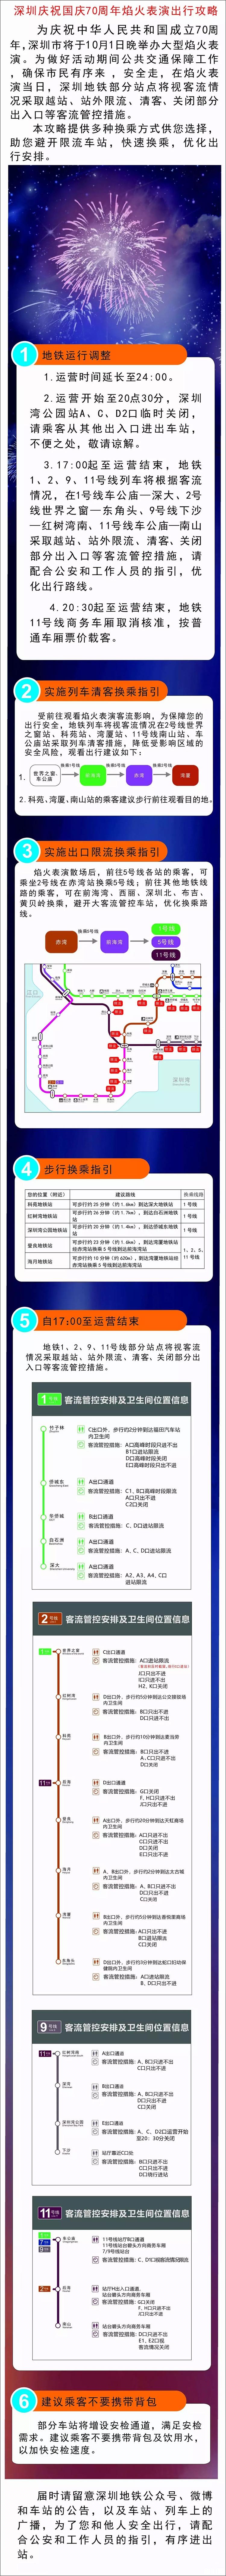 2019深圳国庆烟火晚会时间地点+预约入口+预约指南+交通攻略